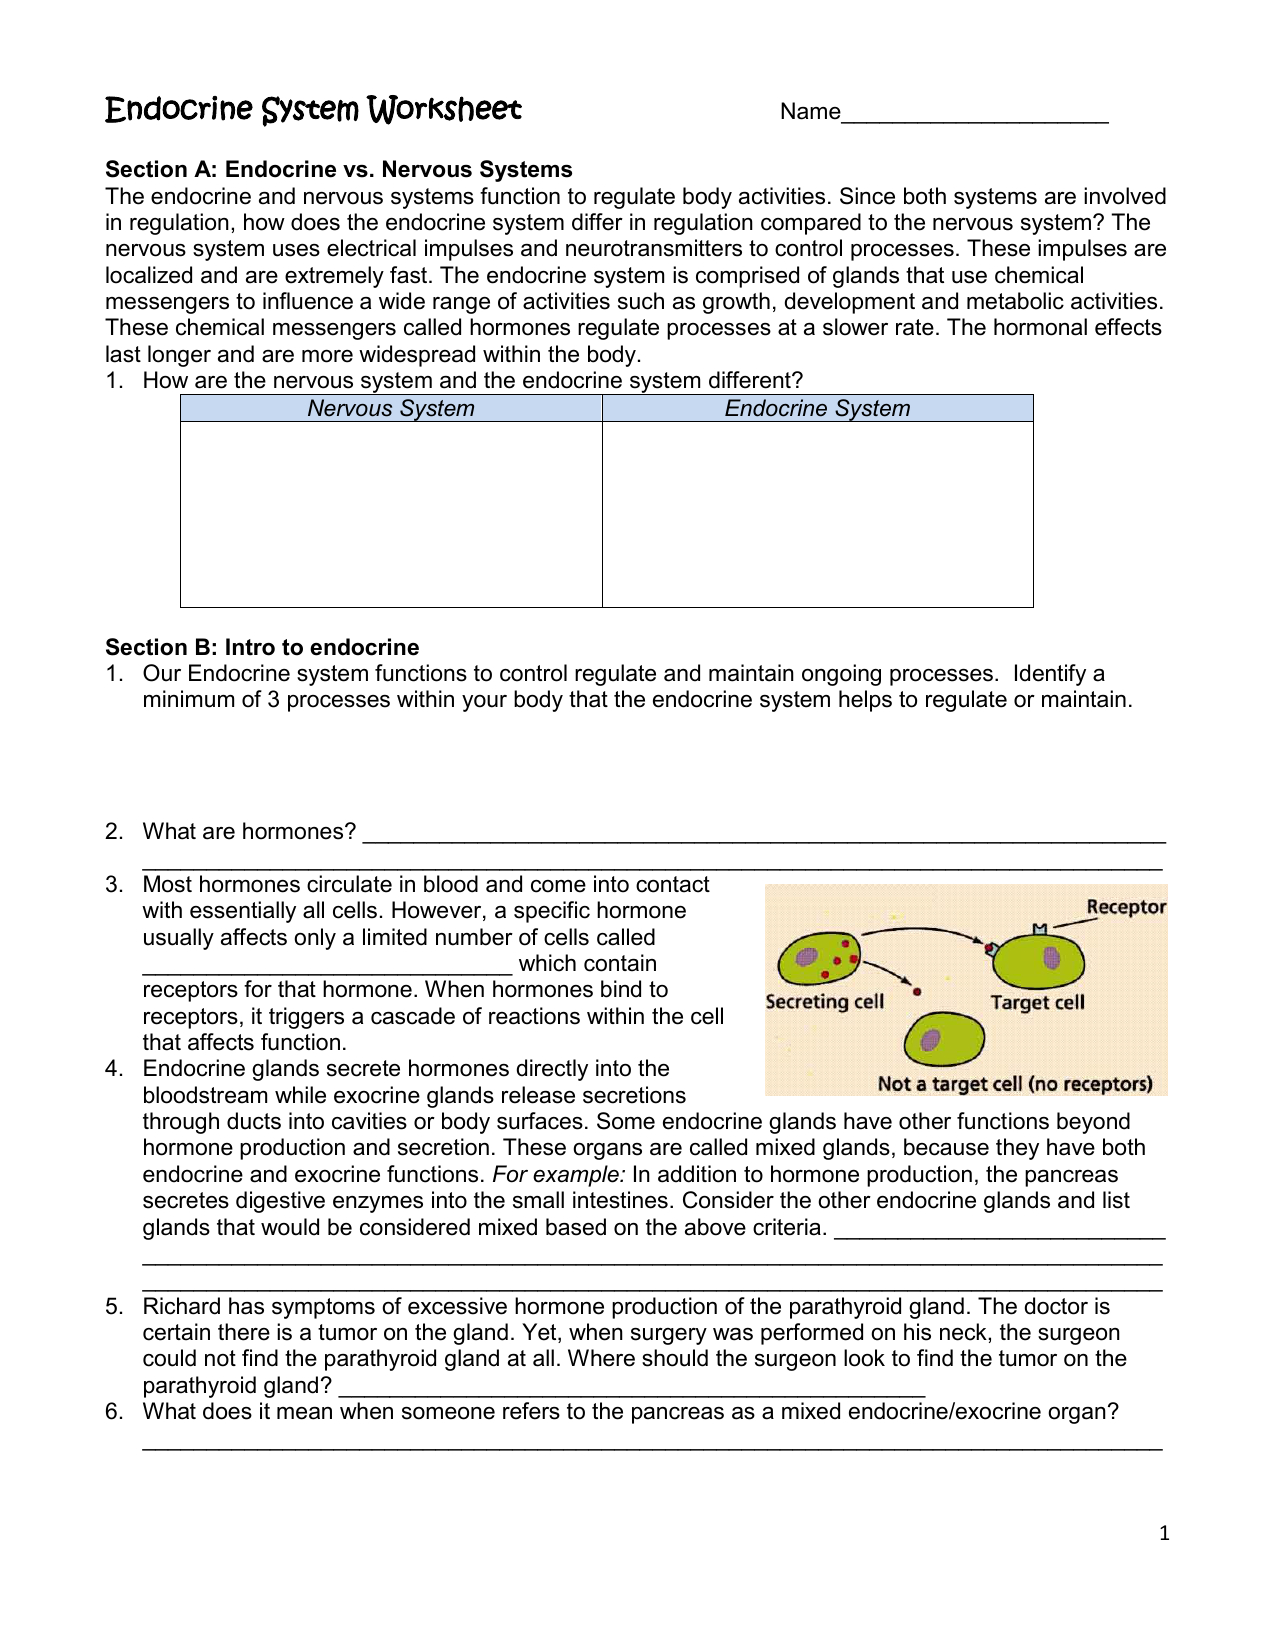 Endocrine System Worksheet Within Endocrine System Worksheet